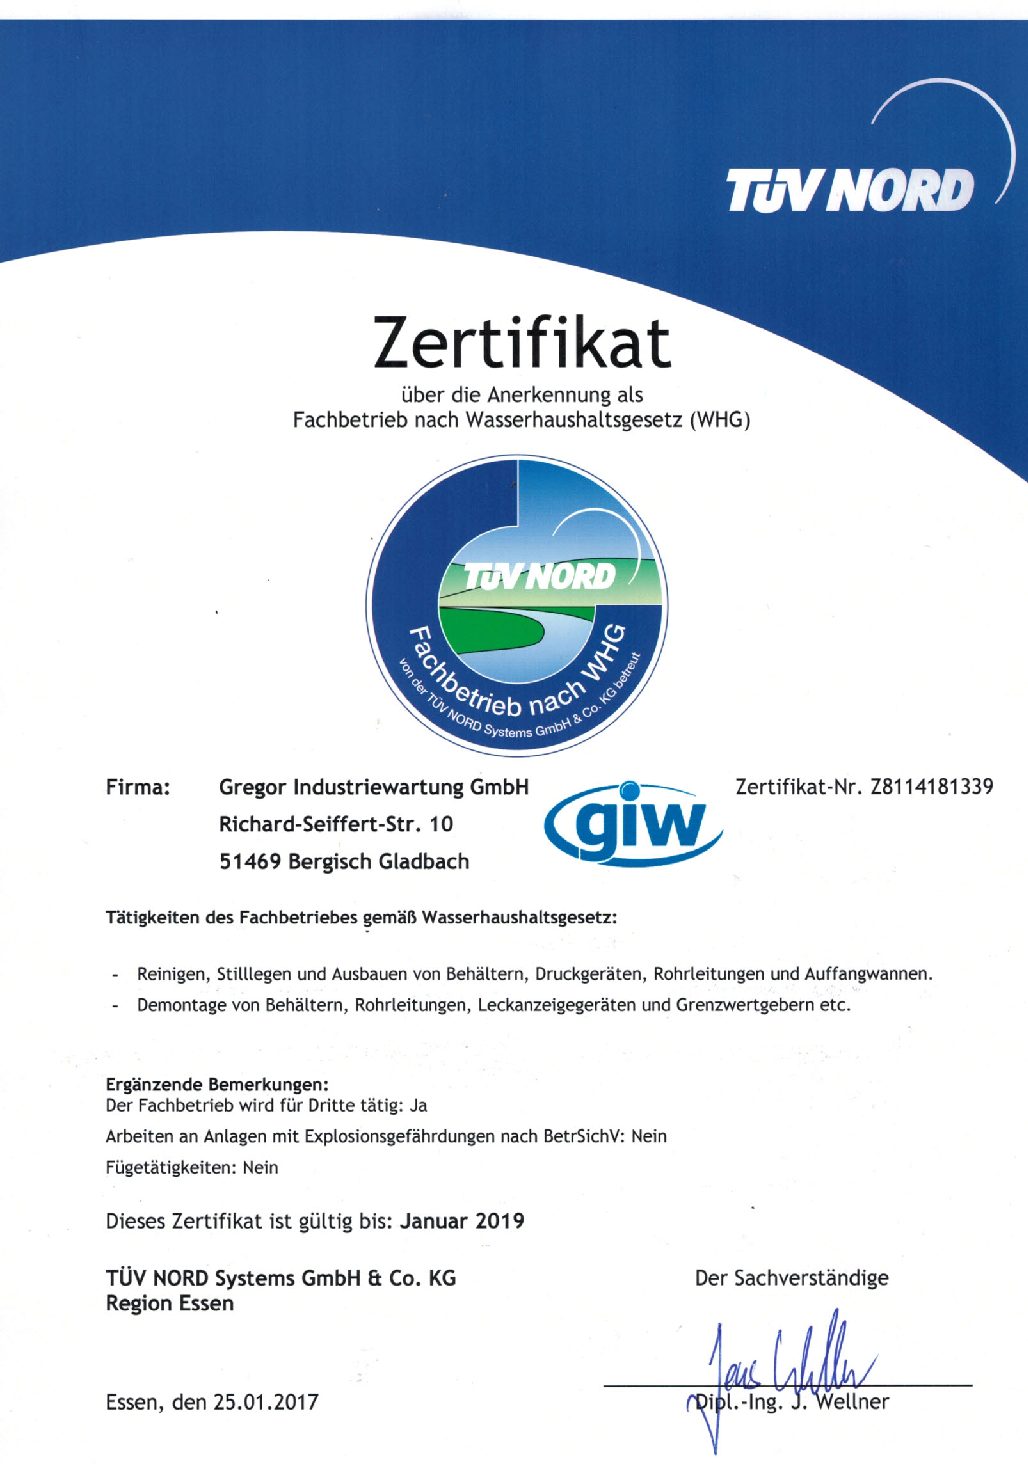 Zertifikat über Anerkennung als Fachbetrieb nach Wasserhaushaltsgesetz